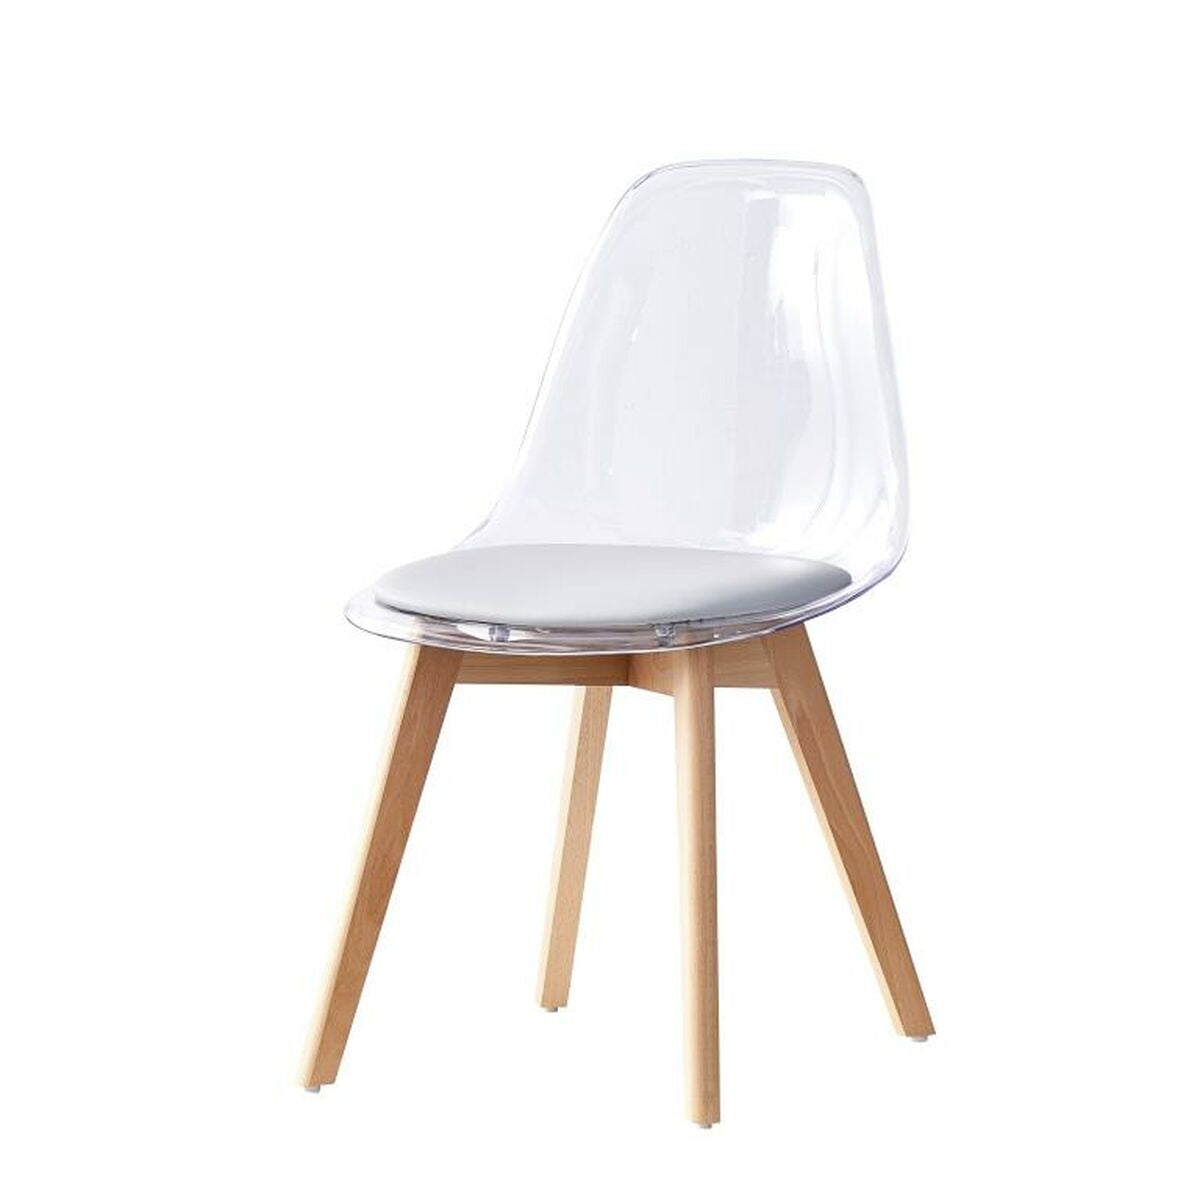 Chaise Design Scandinave Transparente avec assise Grise Home Decor Gris Bois et Polycarbonate (54 x 47 x 81 cm)